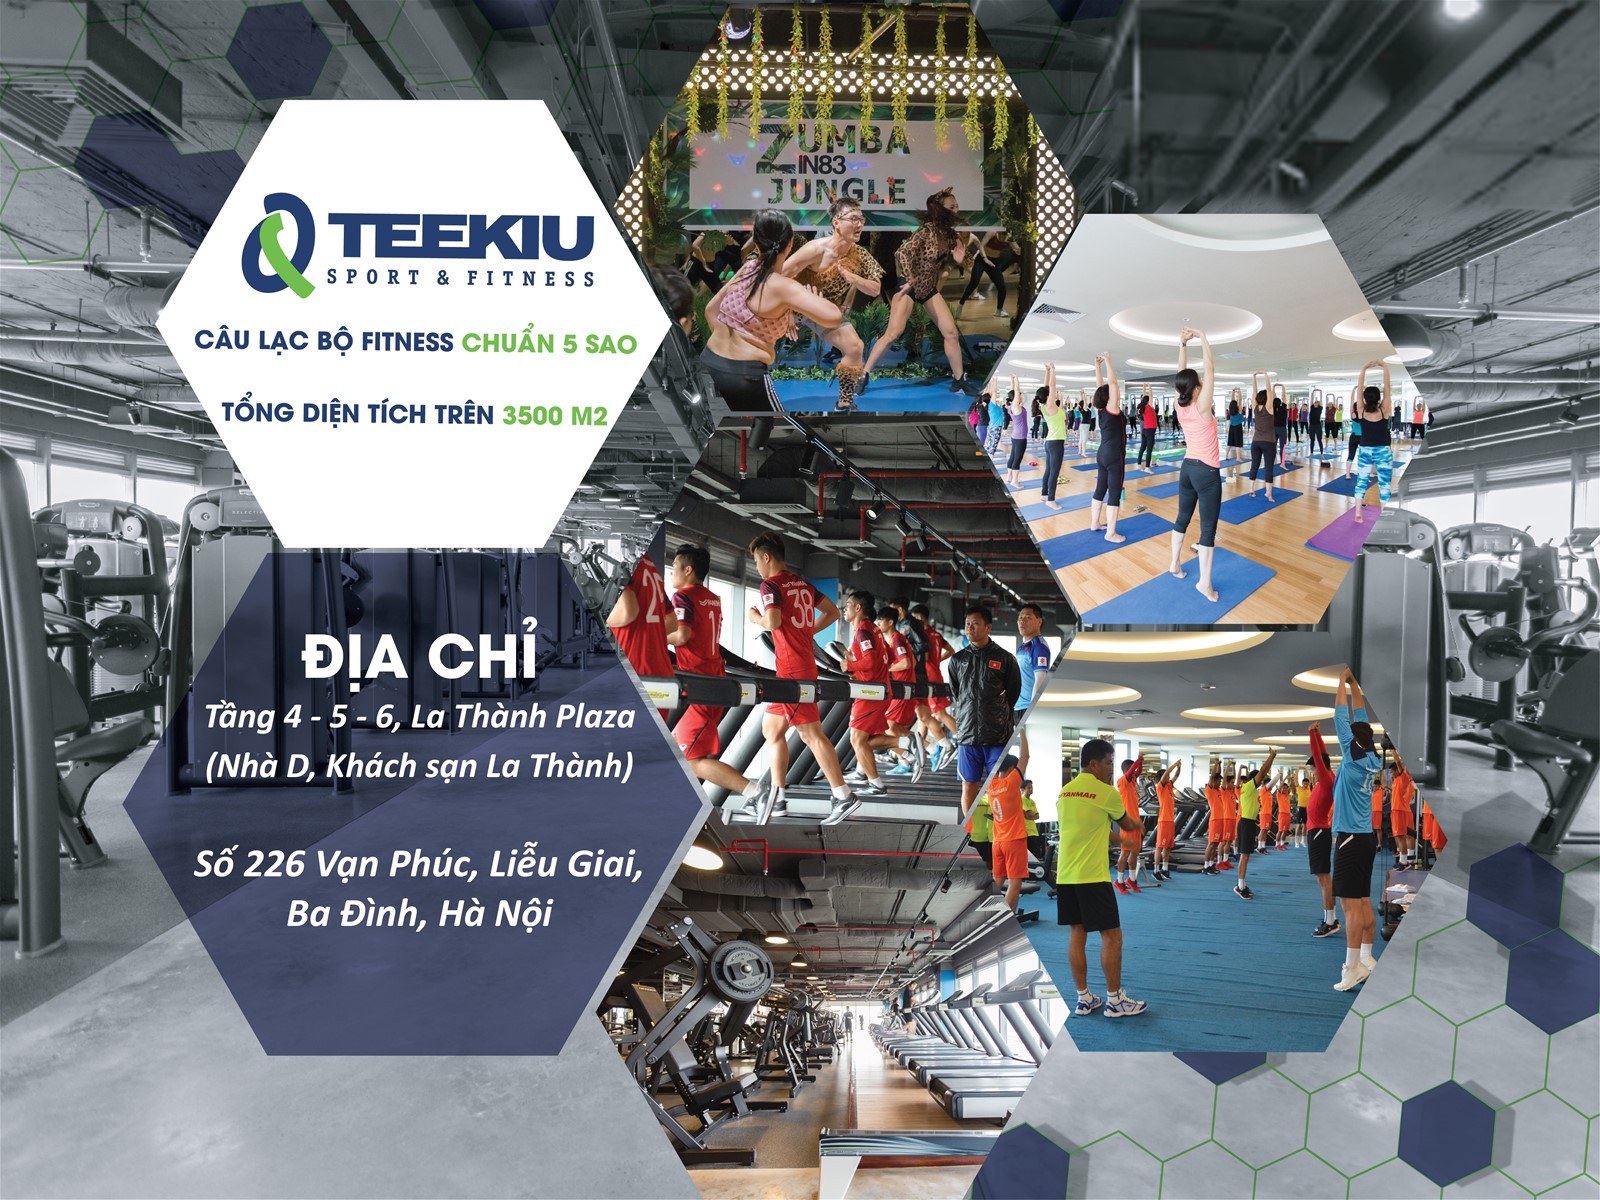 Teekiu Sport & Fitness Đồng Hành Cùng Halong Bay Heritage Marathon 2020